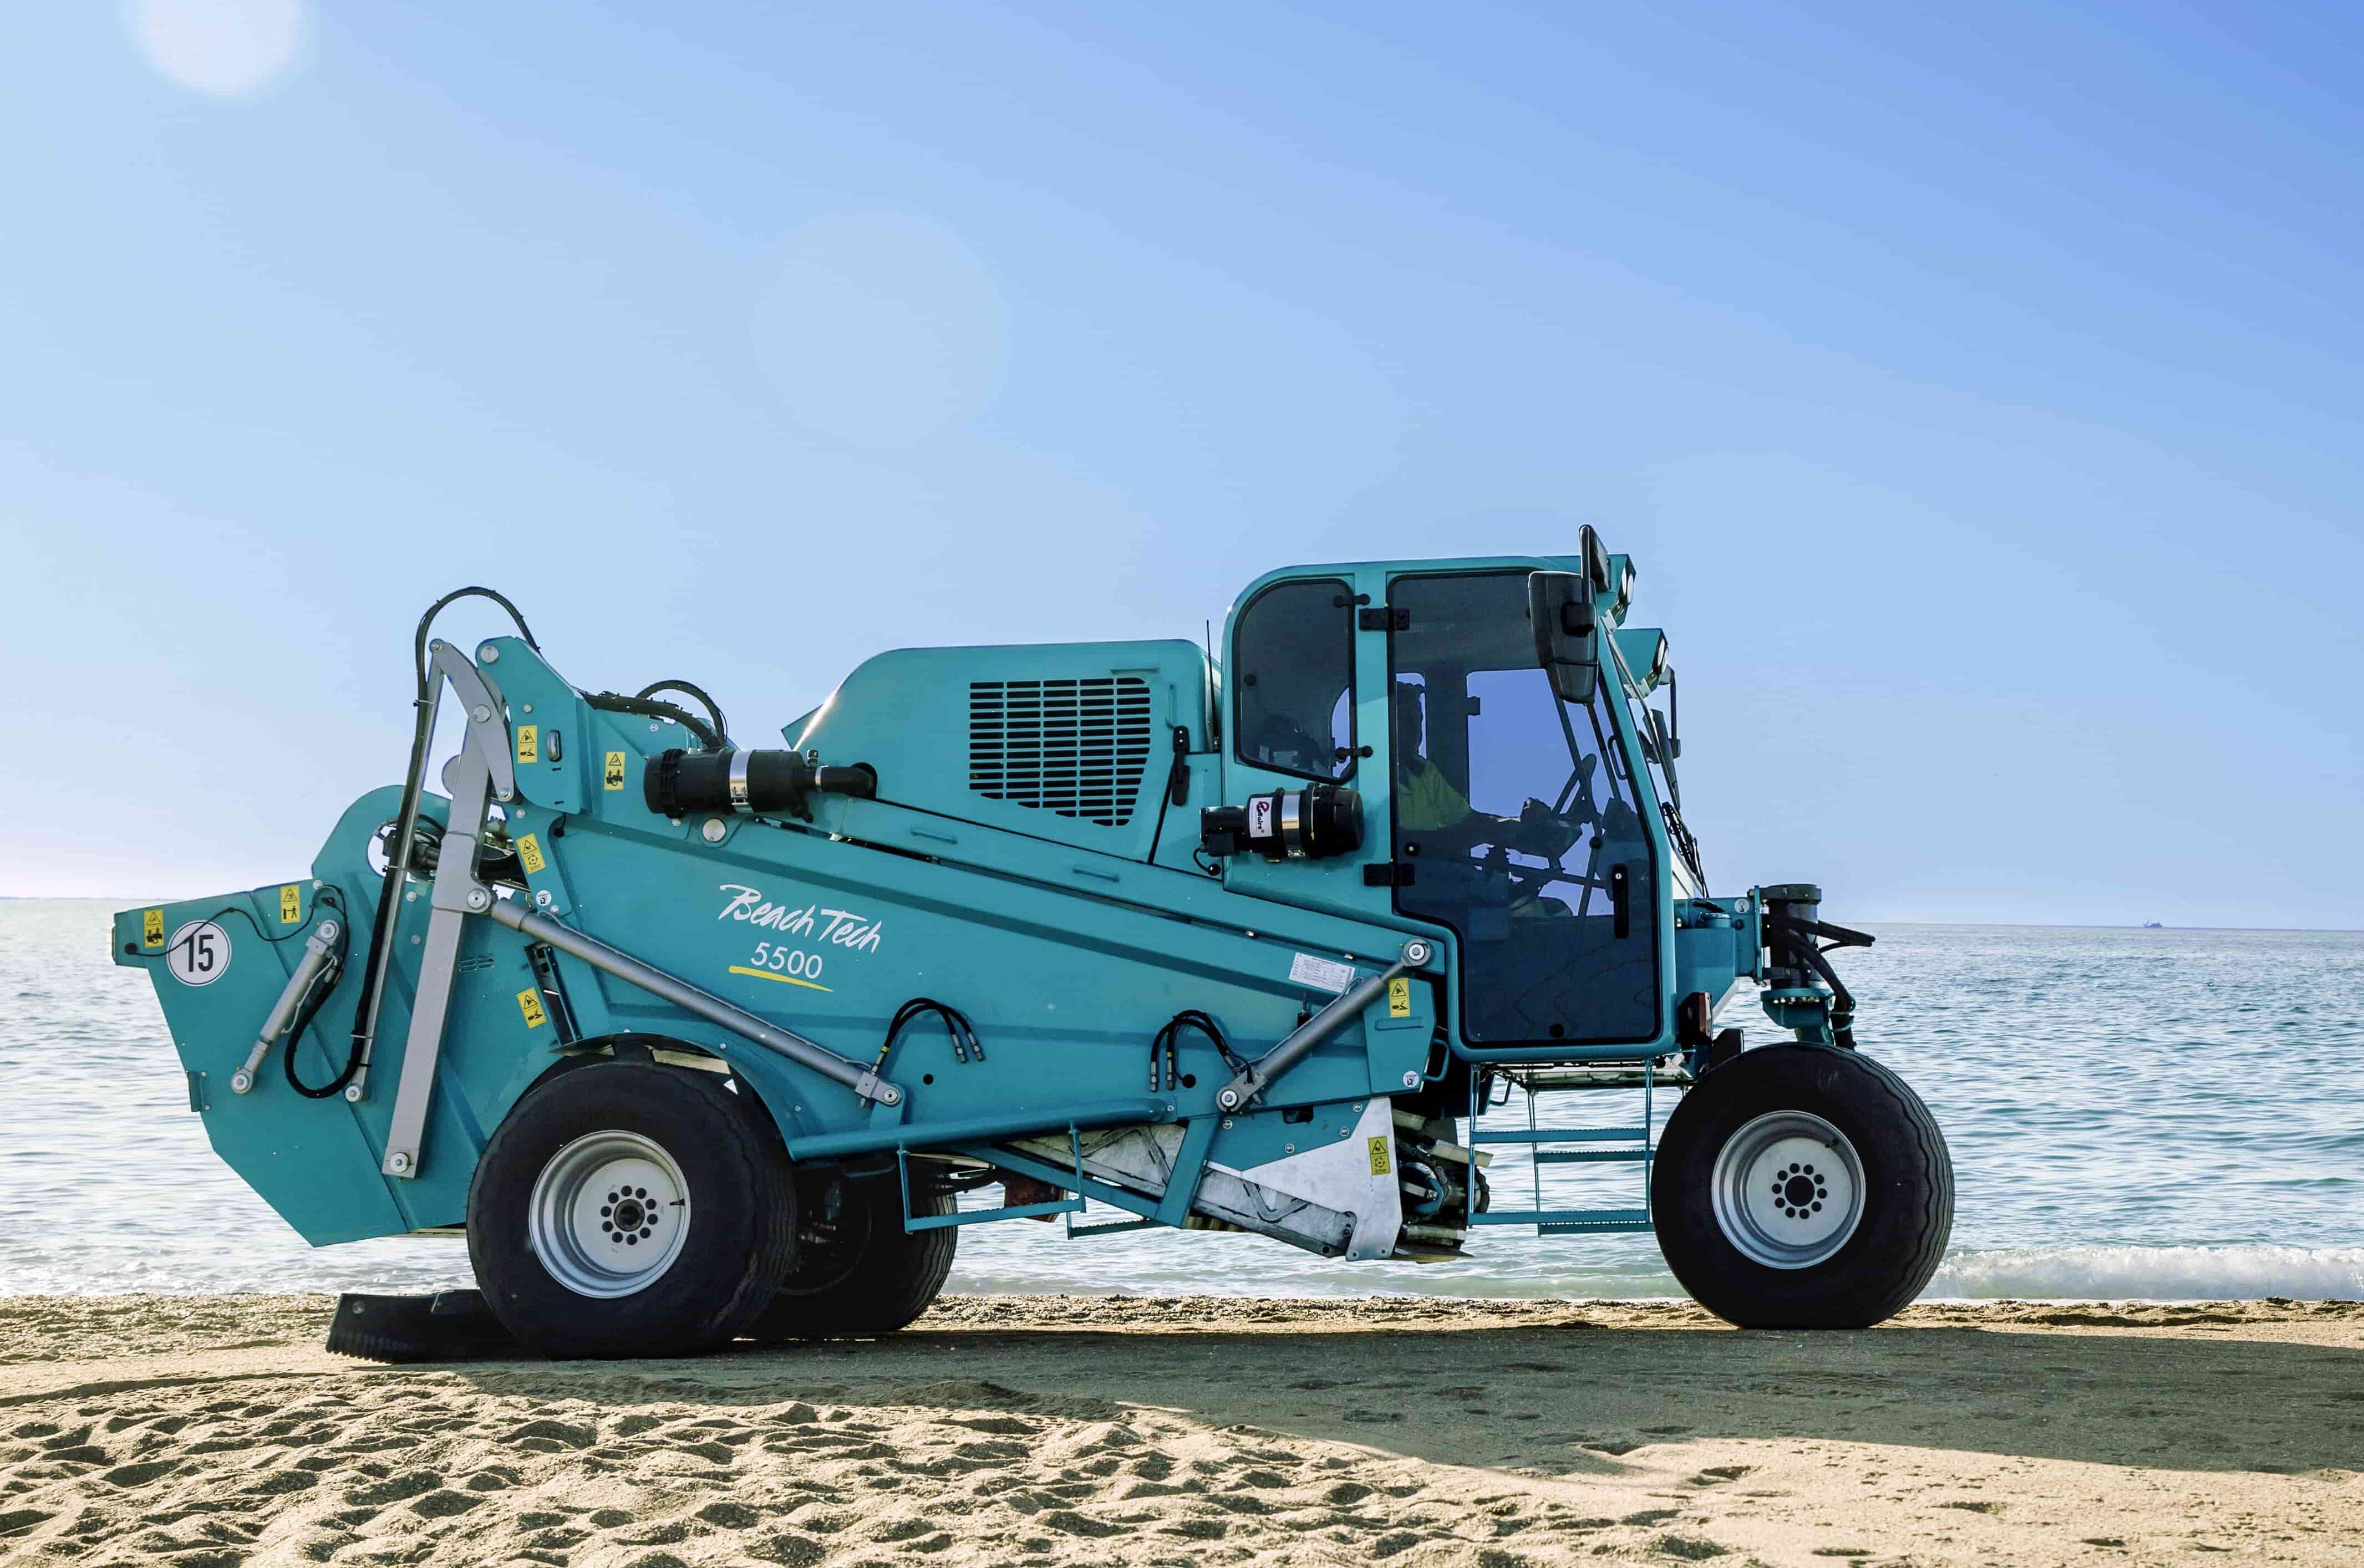 Il nuevo pulispiaggia BeachTech 5500 sulla spiaggia